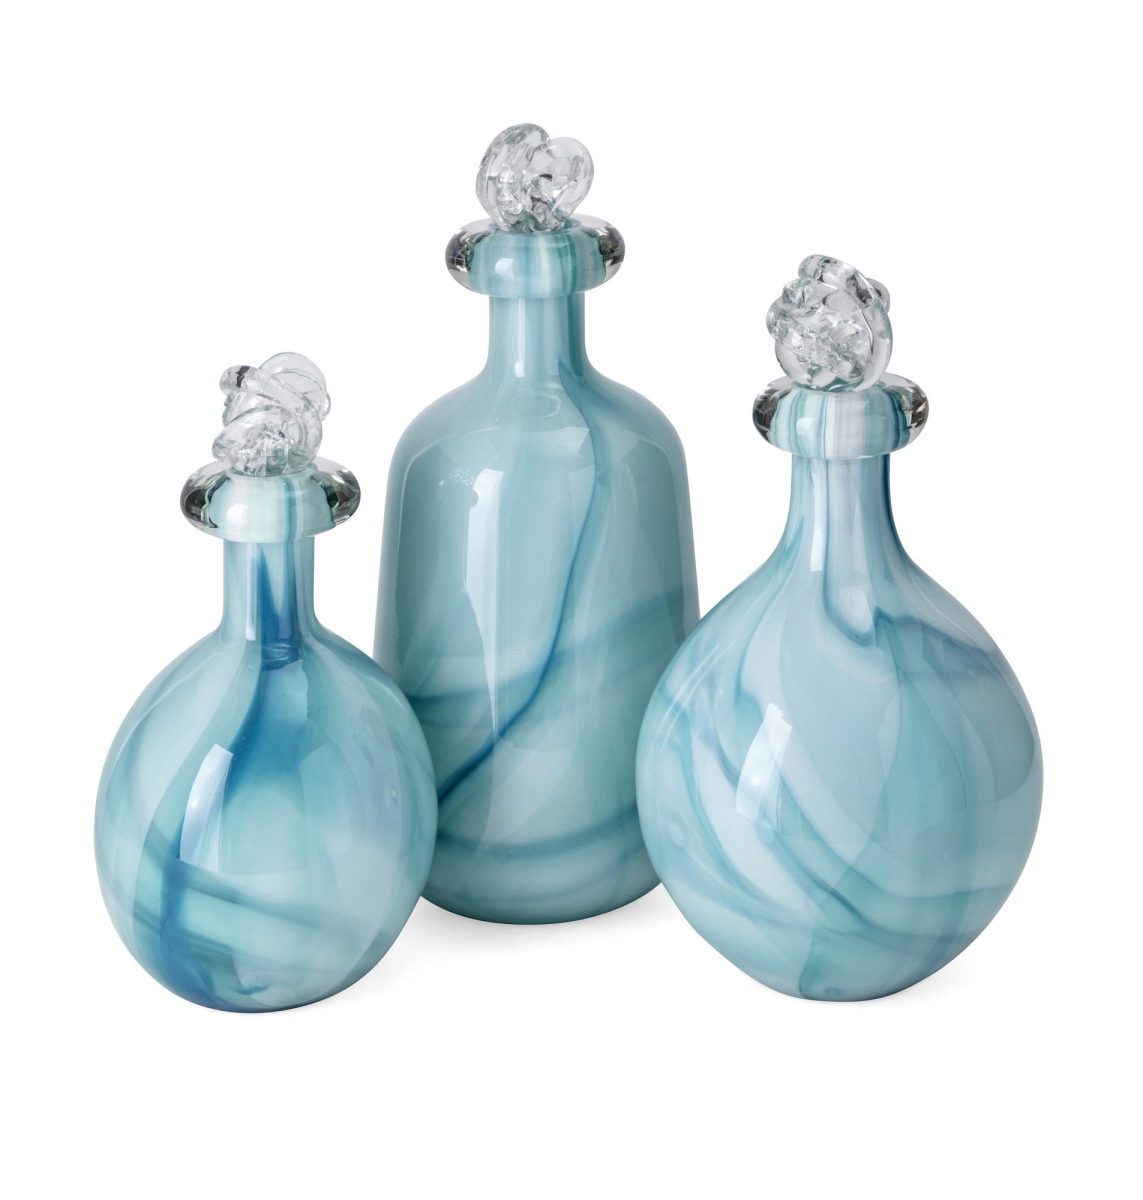 Imax 48202-3 Baker Art Glass Bottles With Knot Stopper - Set Of 3